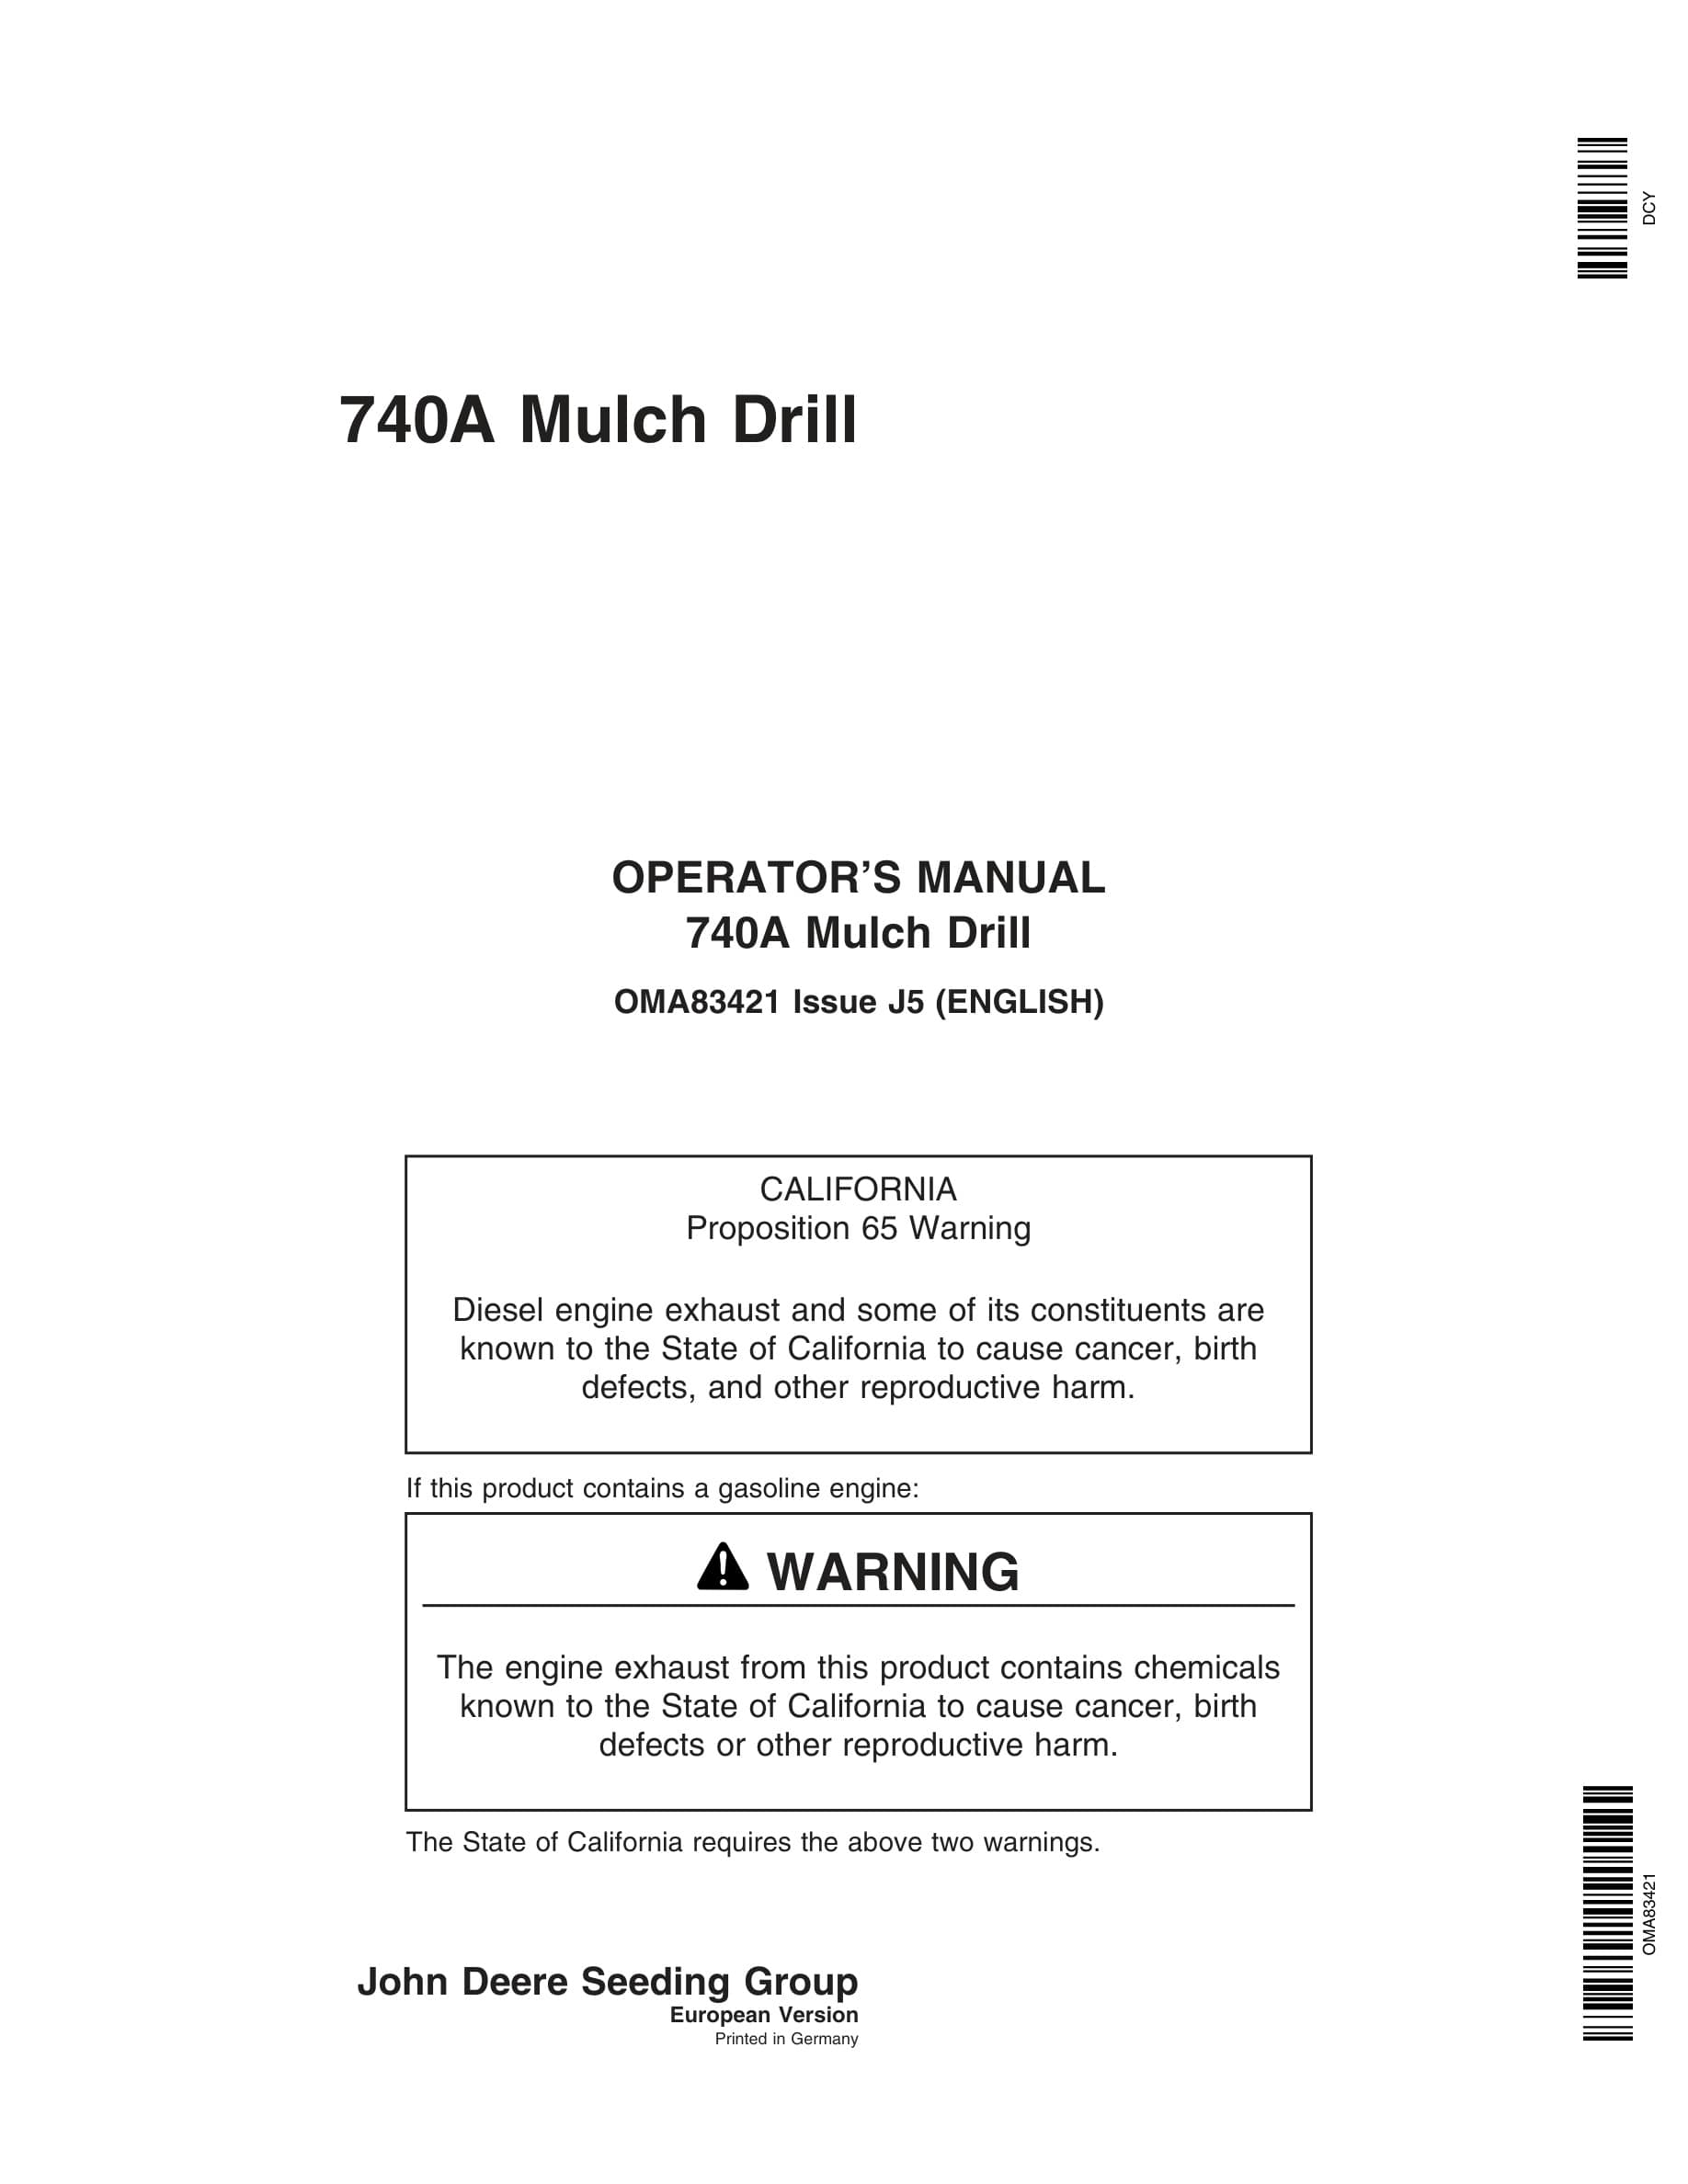 John Deere 740A Mulch Drill Operator Manual OMA83421-1